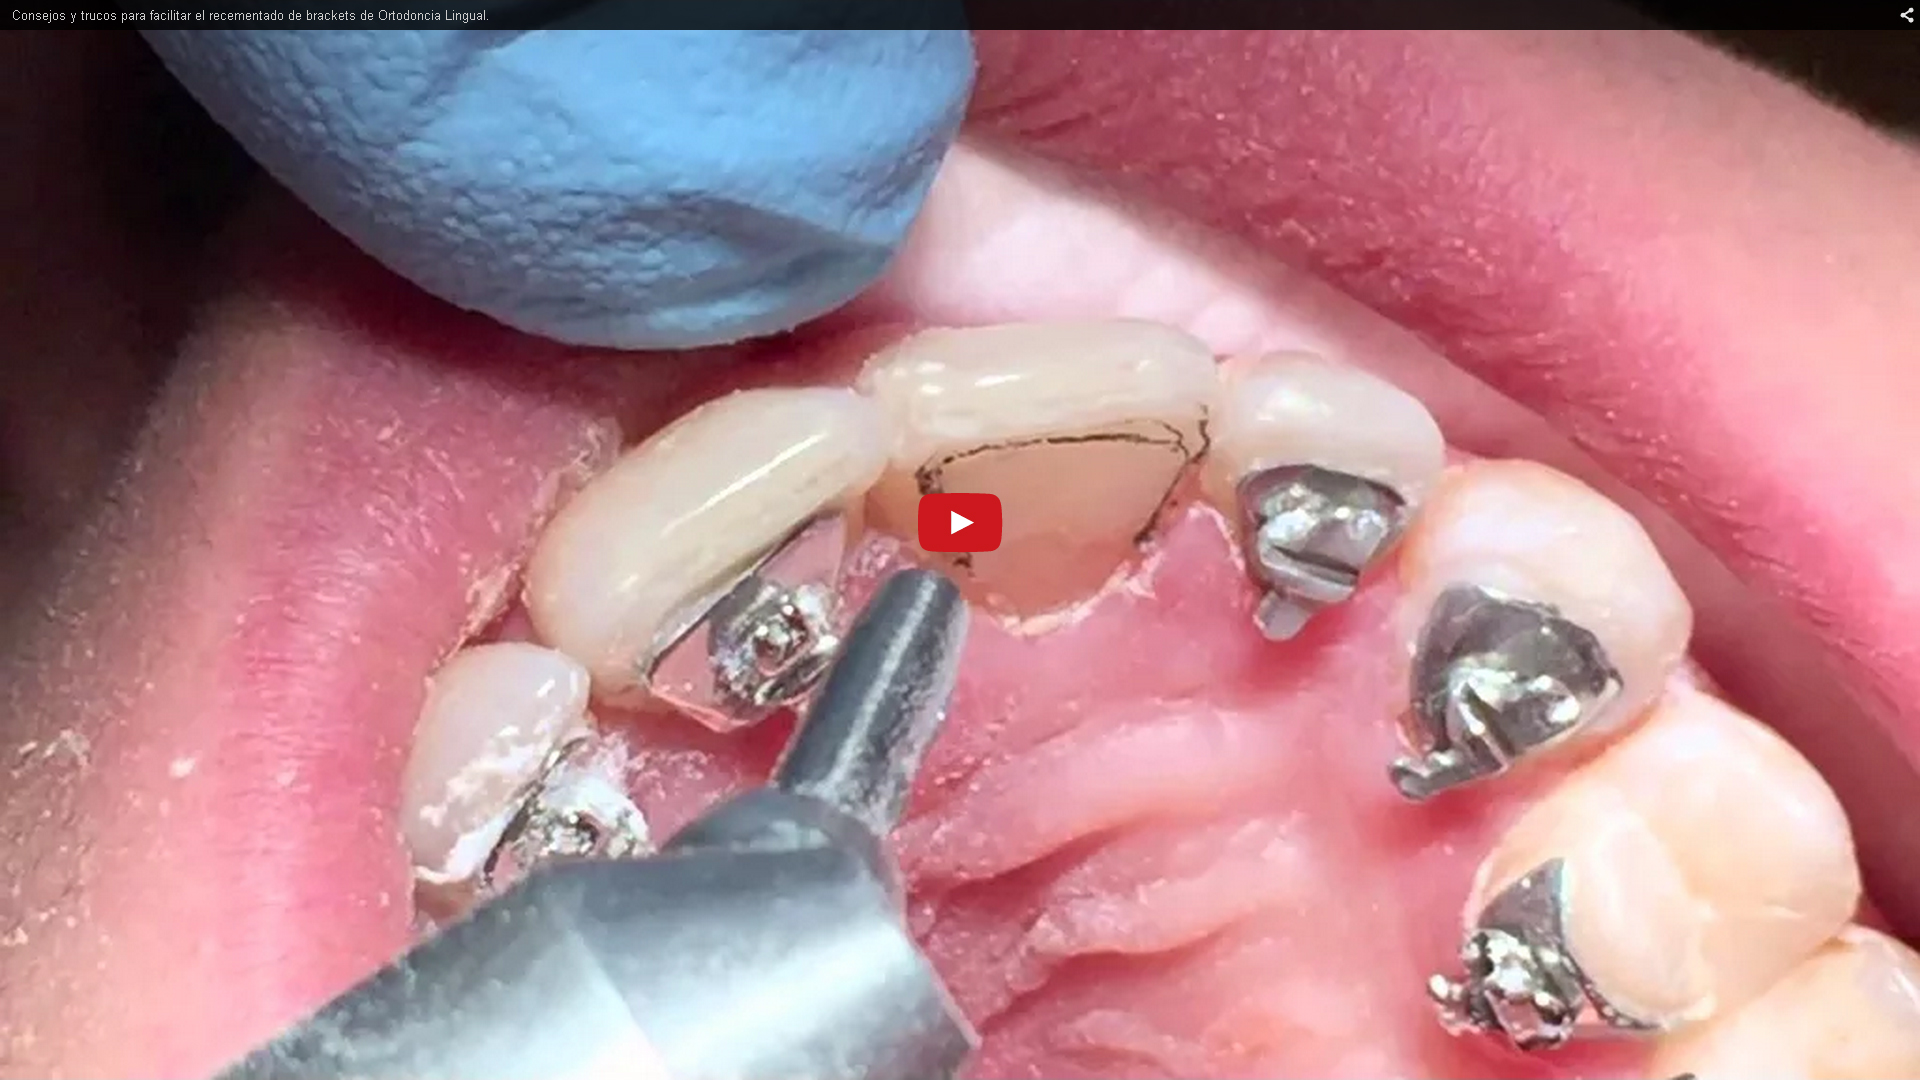 Trucos para el recementado de los brackets linguales | Clínica Dental Ortoperio